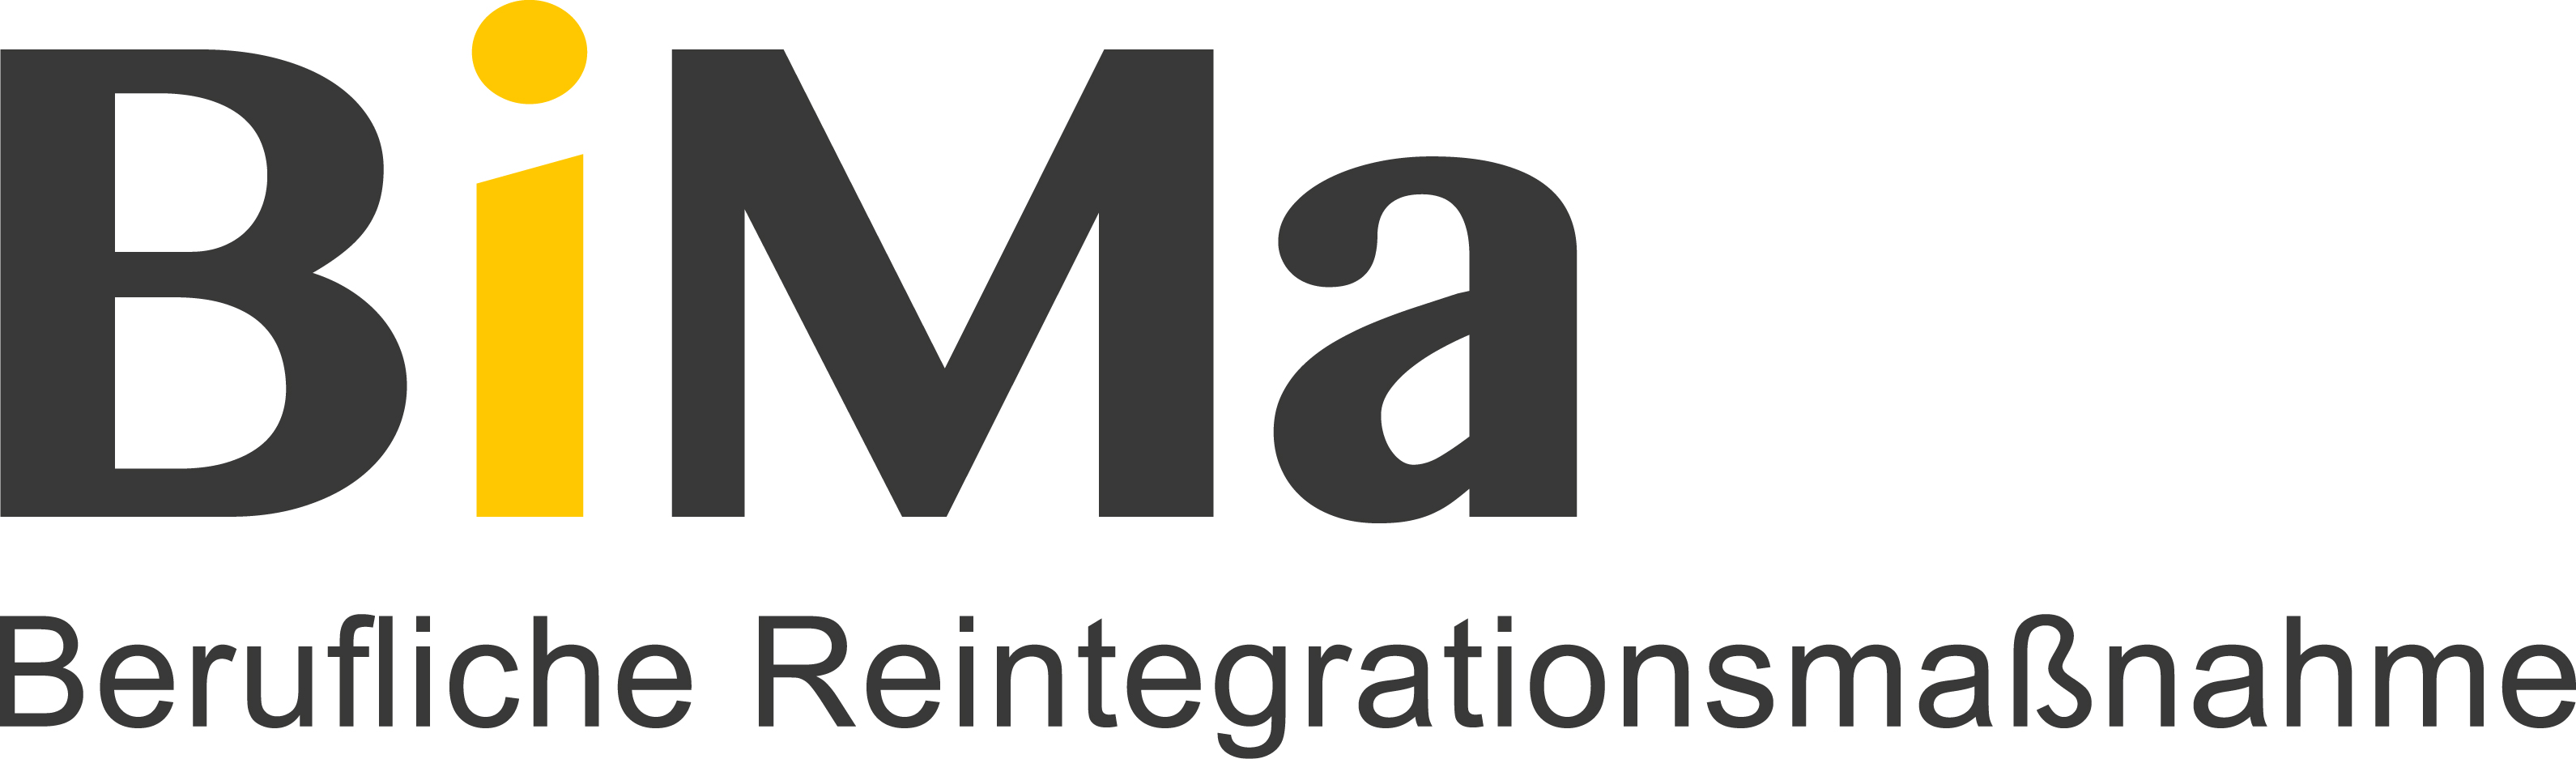 Werkgemeinschaft_Logo_BiMa